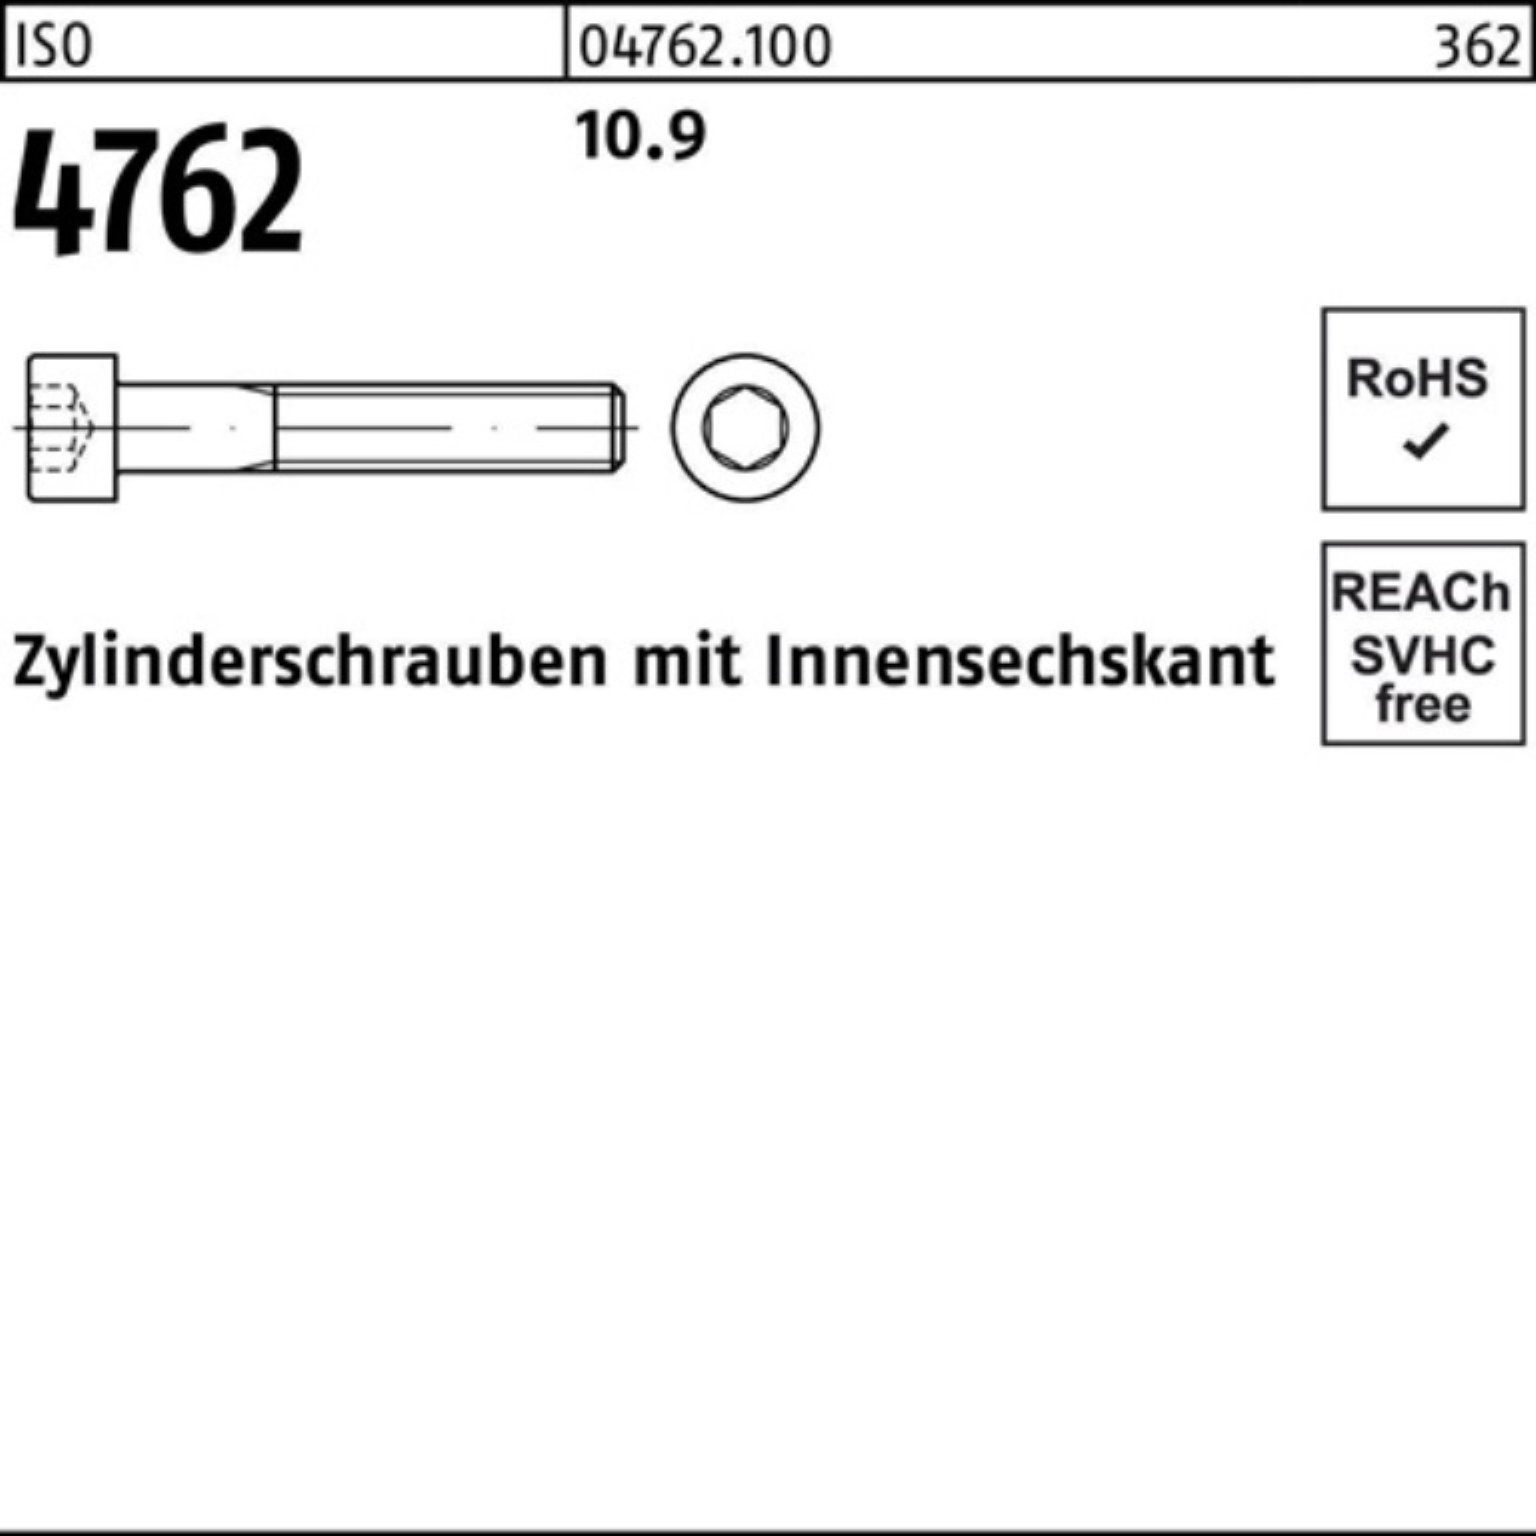 Zylinderschraube Pack Zylinderschraube Innen-6kt Reyher 500er 500 Stück 10.9 4762 M3x ISO 20